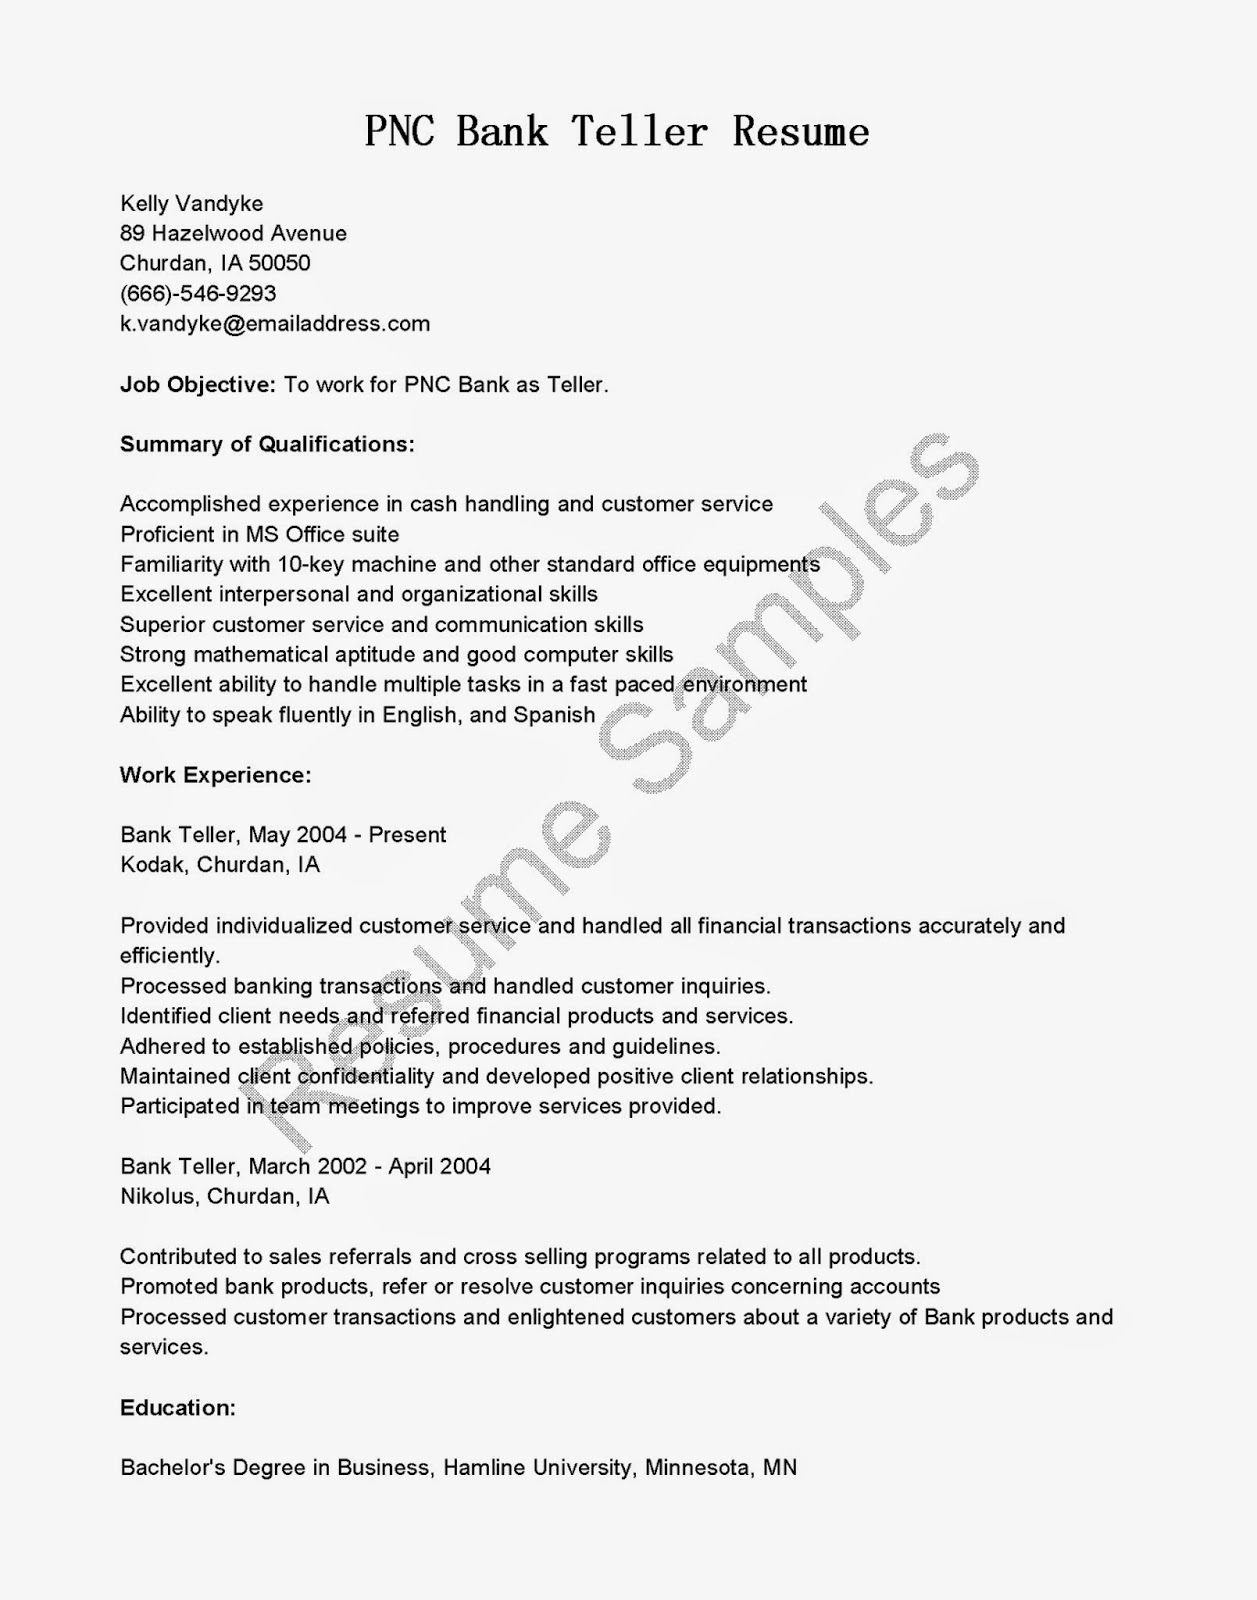 Head teller resume cover letter